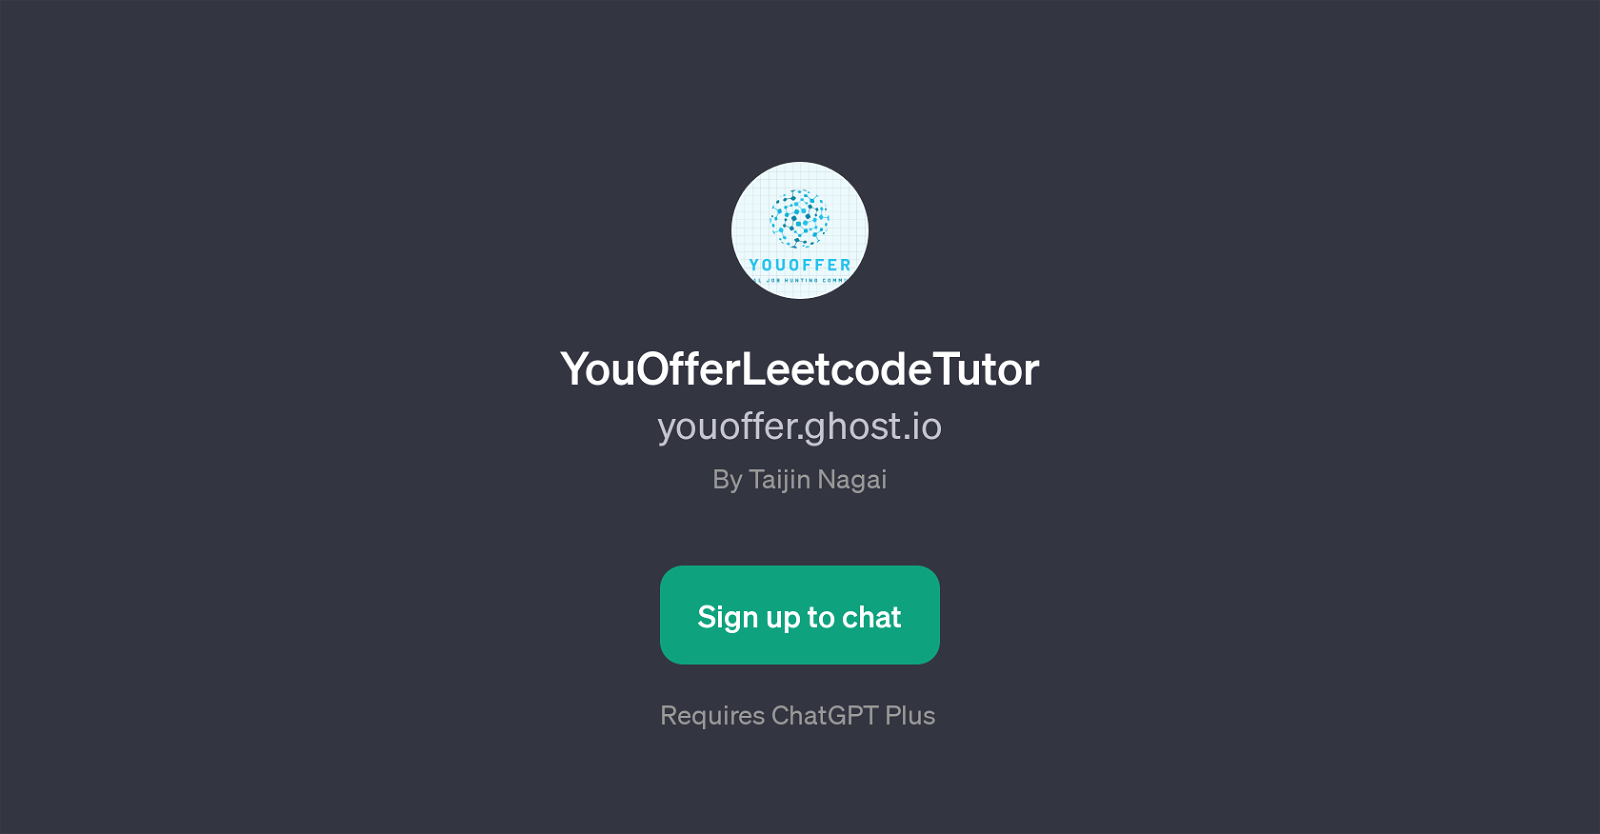 YouOfferLeetcodeTutor website